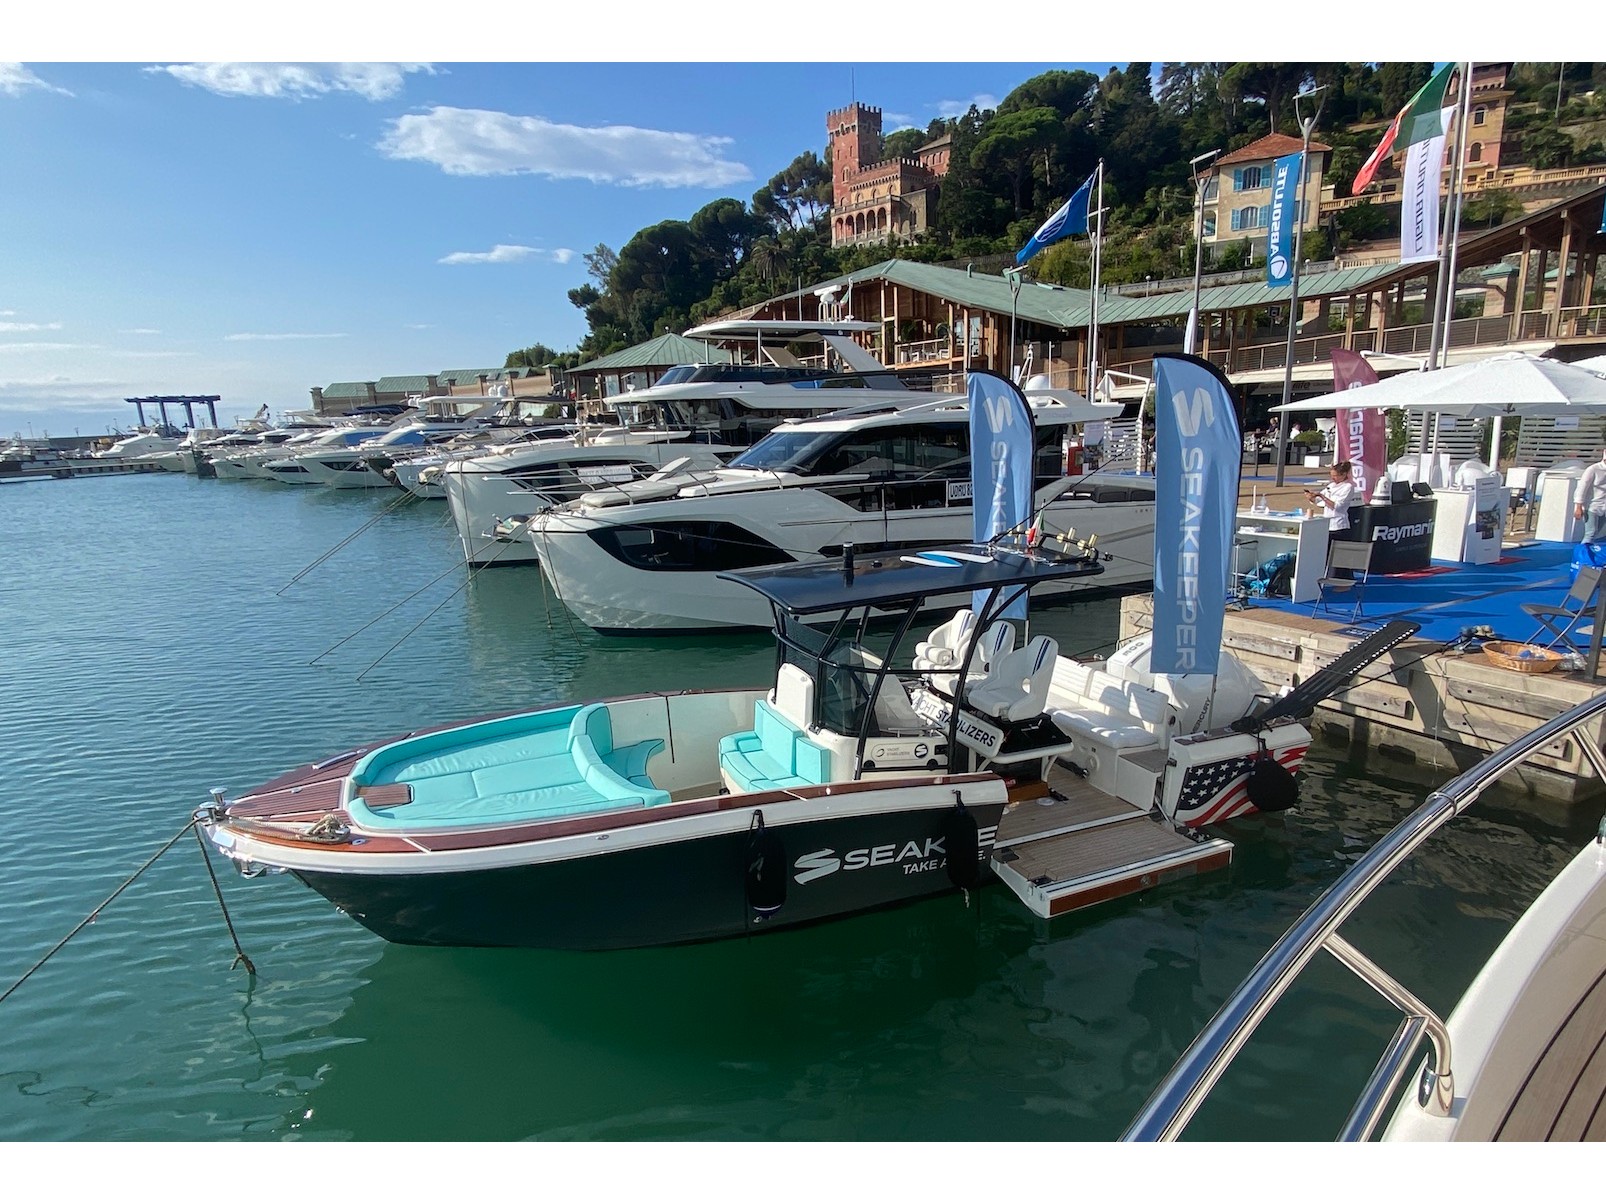 White Shark 285 - Yacht Charter Genova & Boat hire in Italy Italian Riviera La Spezia Province La Spezia Porto Mirabello 3